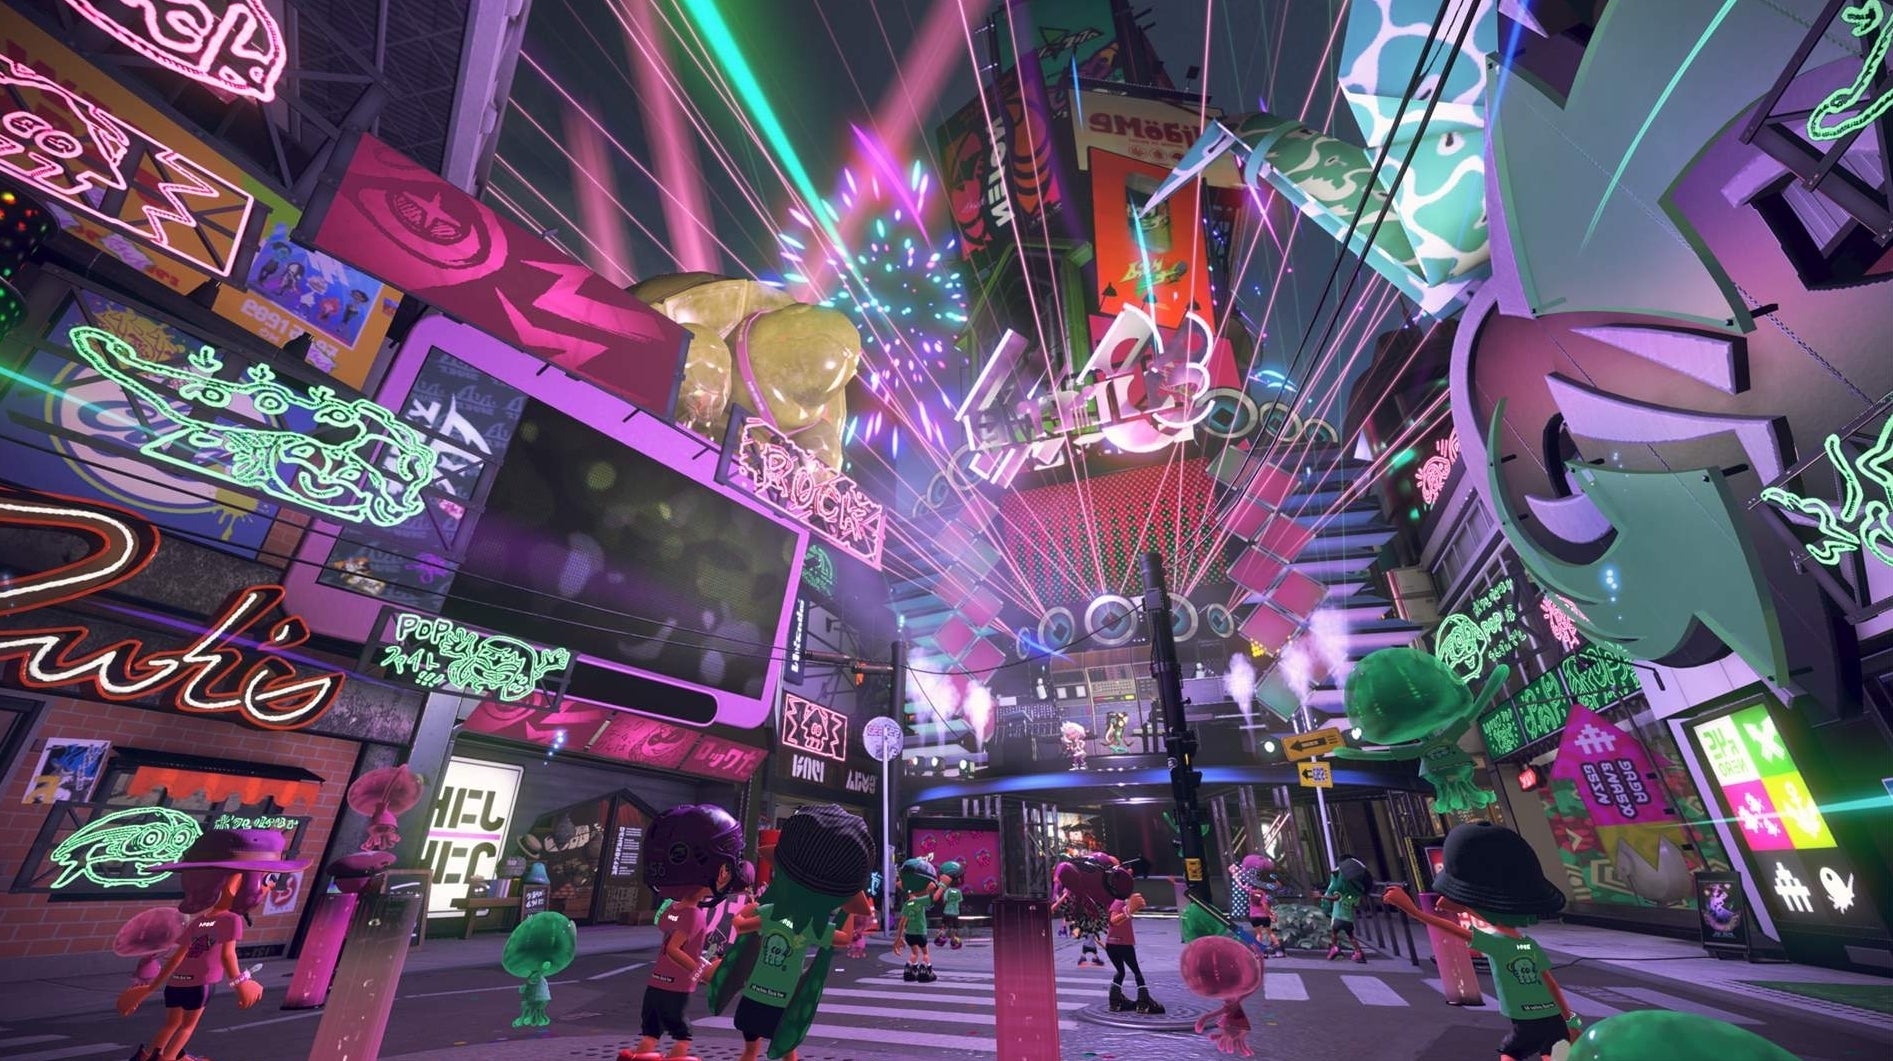 Image for Nintendo details Splatoon 2's last-ever Splatfest, coming in July